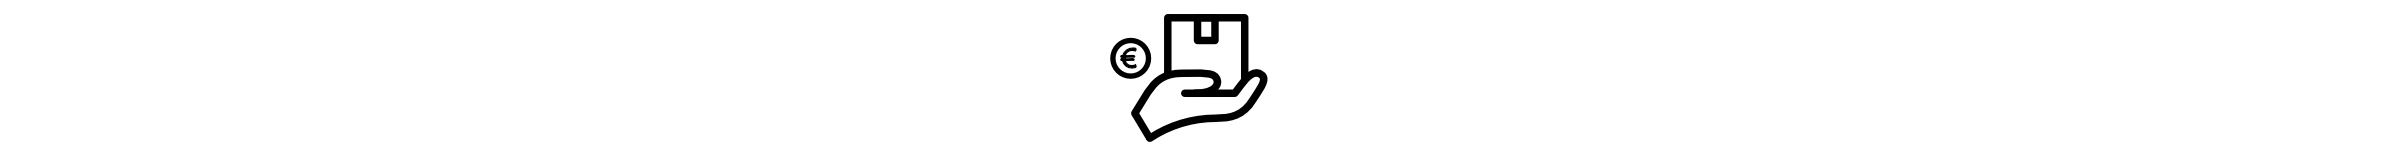 info-banner-versand und bezahlungbedingungen-symbol-pc